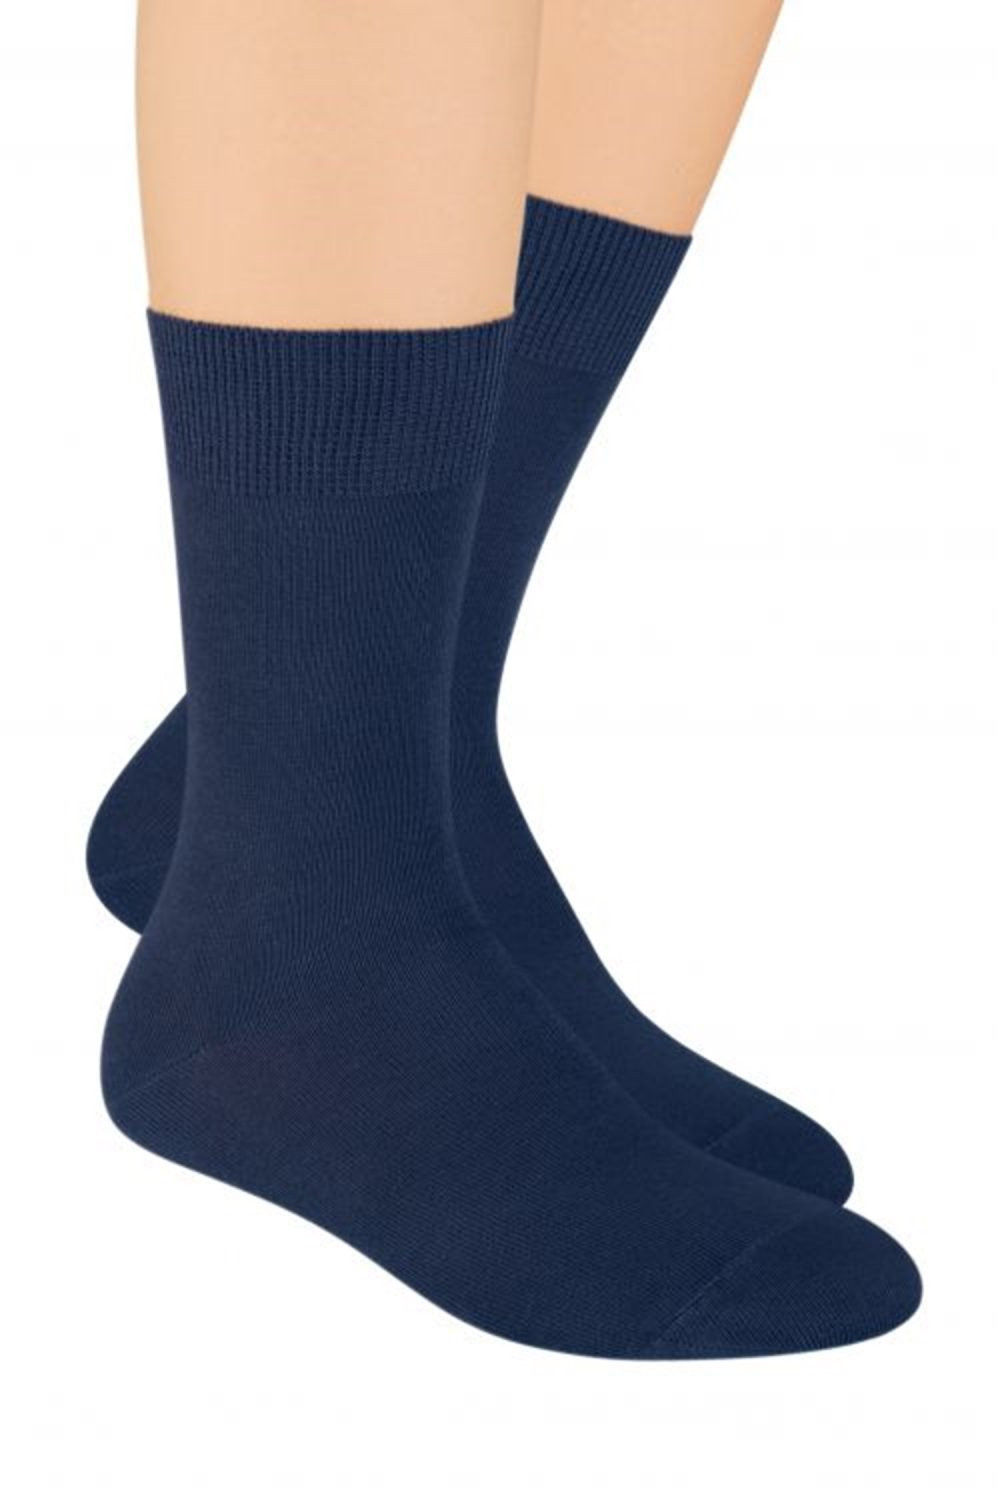 Pánské ponožky 048 tmavě modré - Steven jeans 38/40